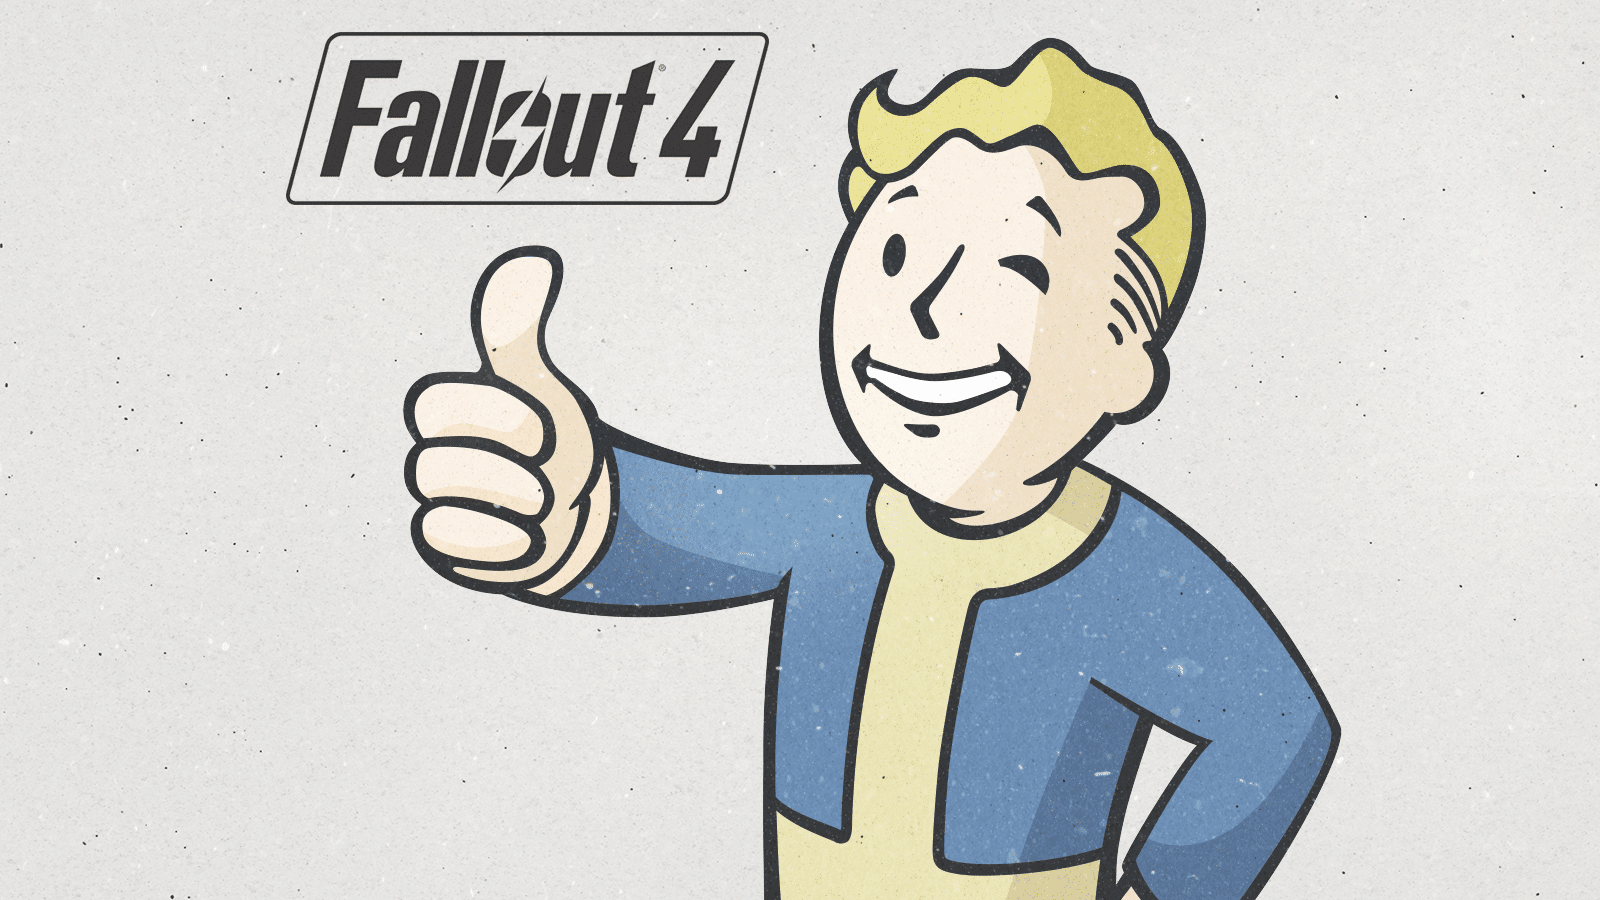 Fallout 4 es el juego más exitoso de Bethesda según ejecutivo-gAMERSrd